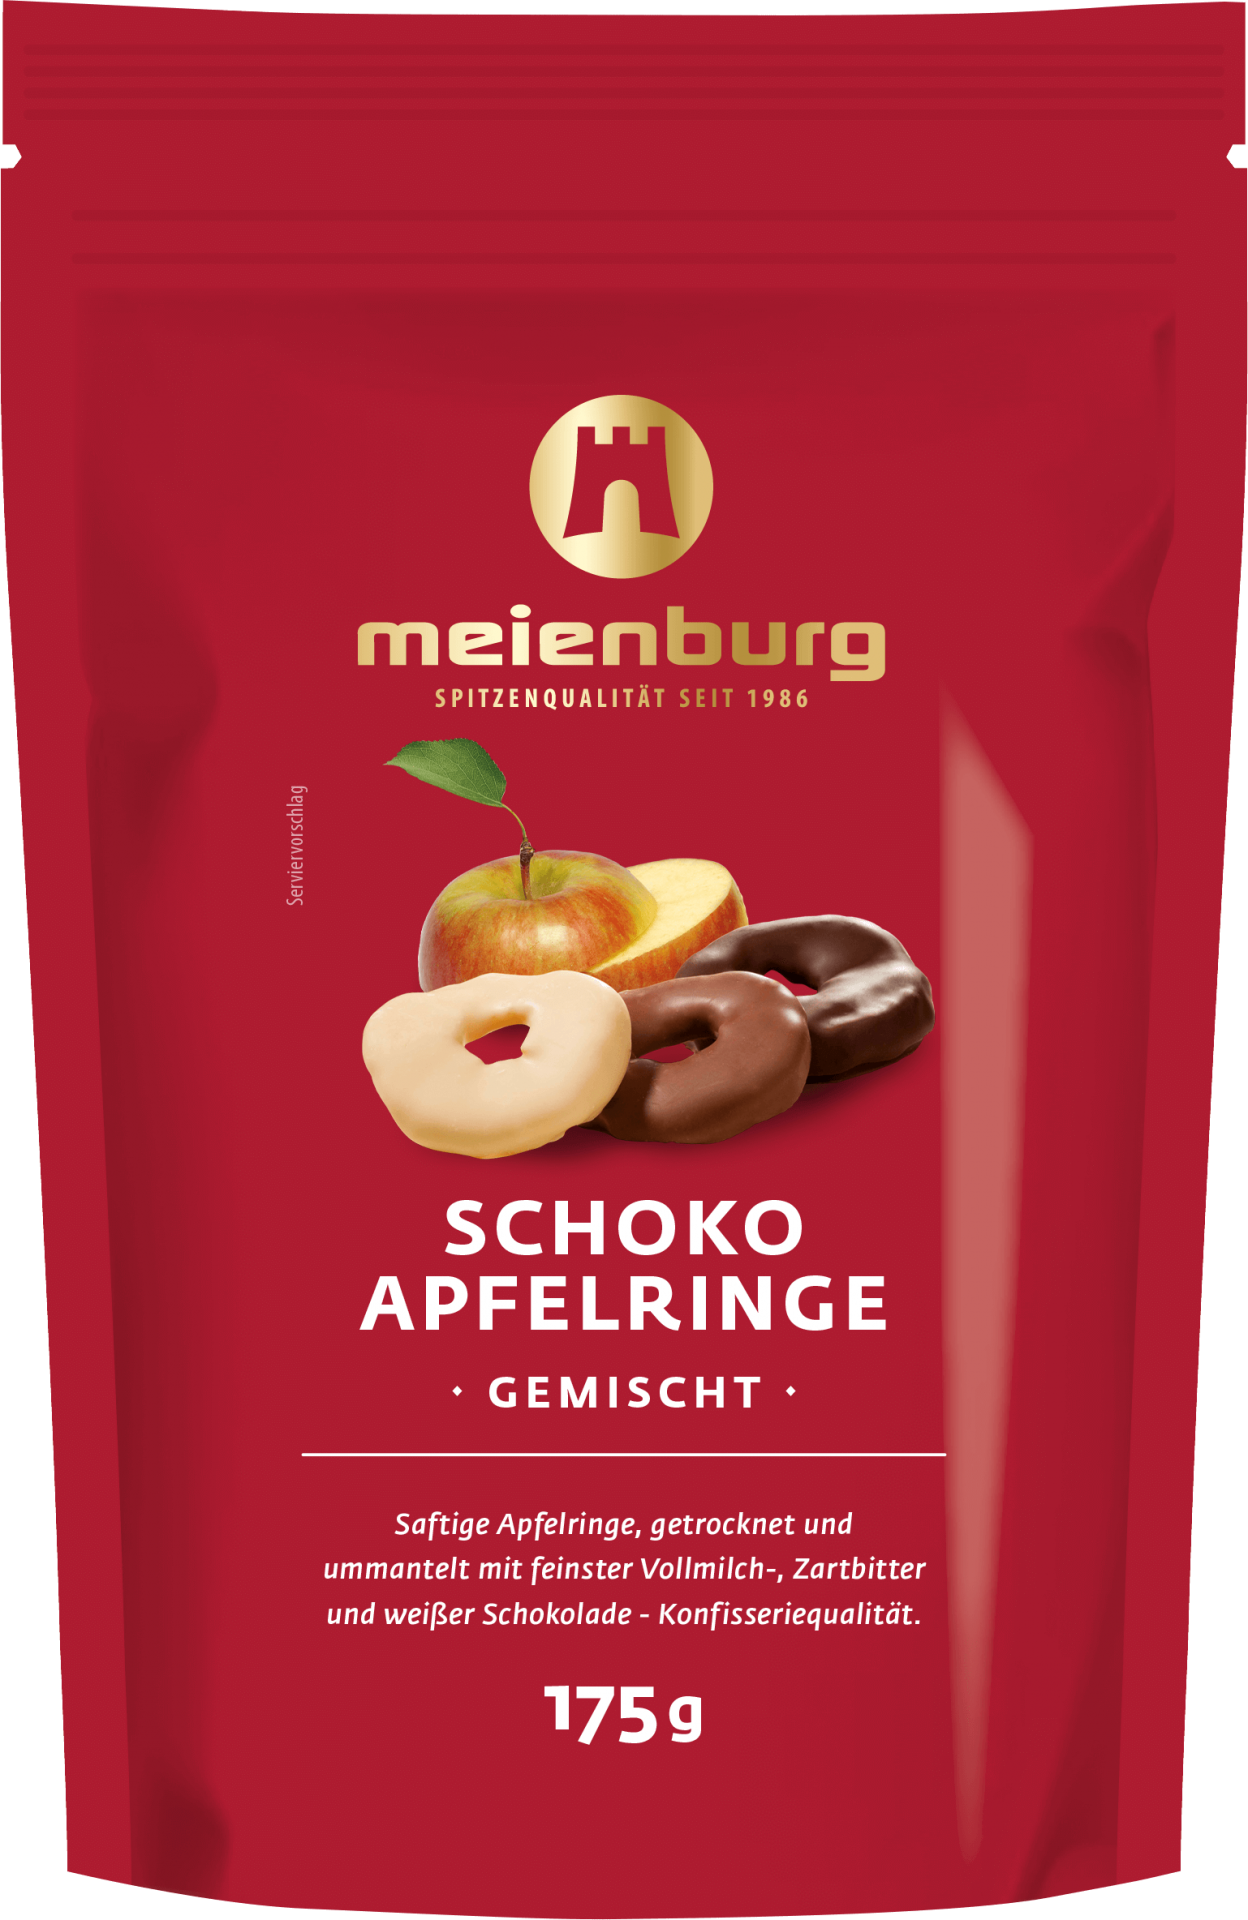 Meienburg Schoko-Apfelringe 175g